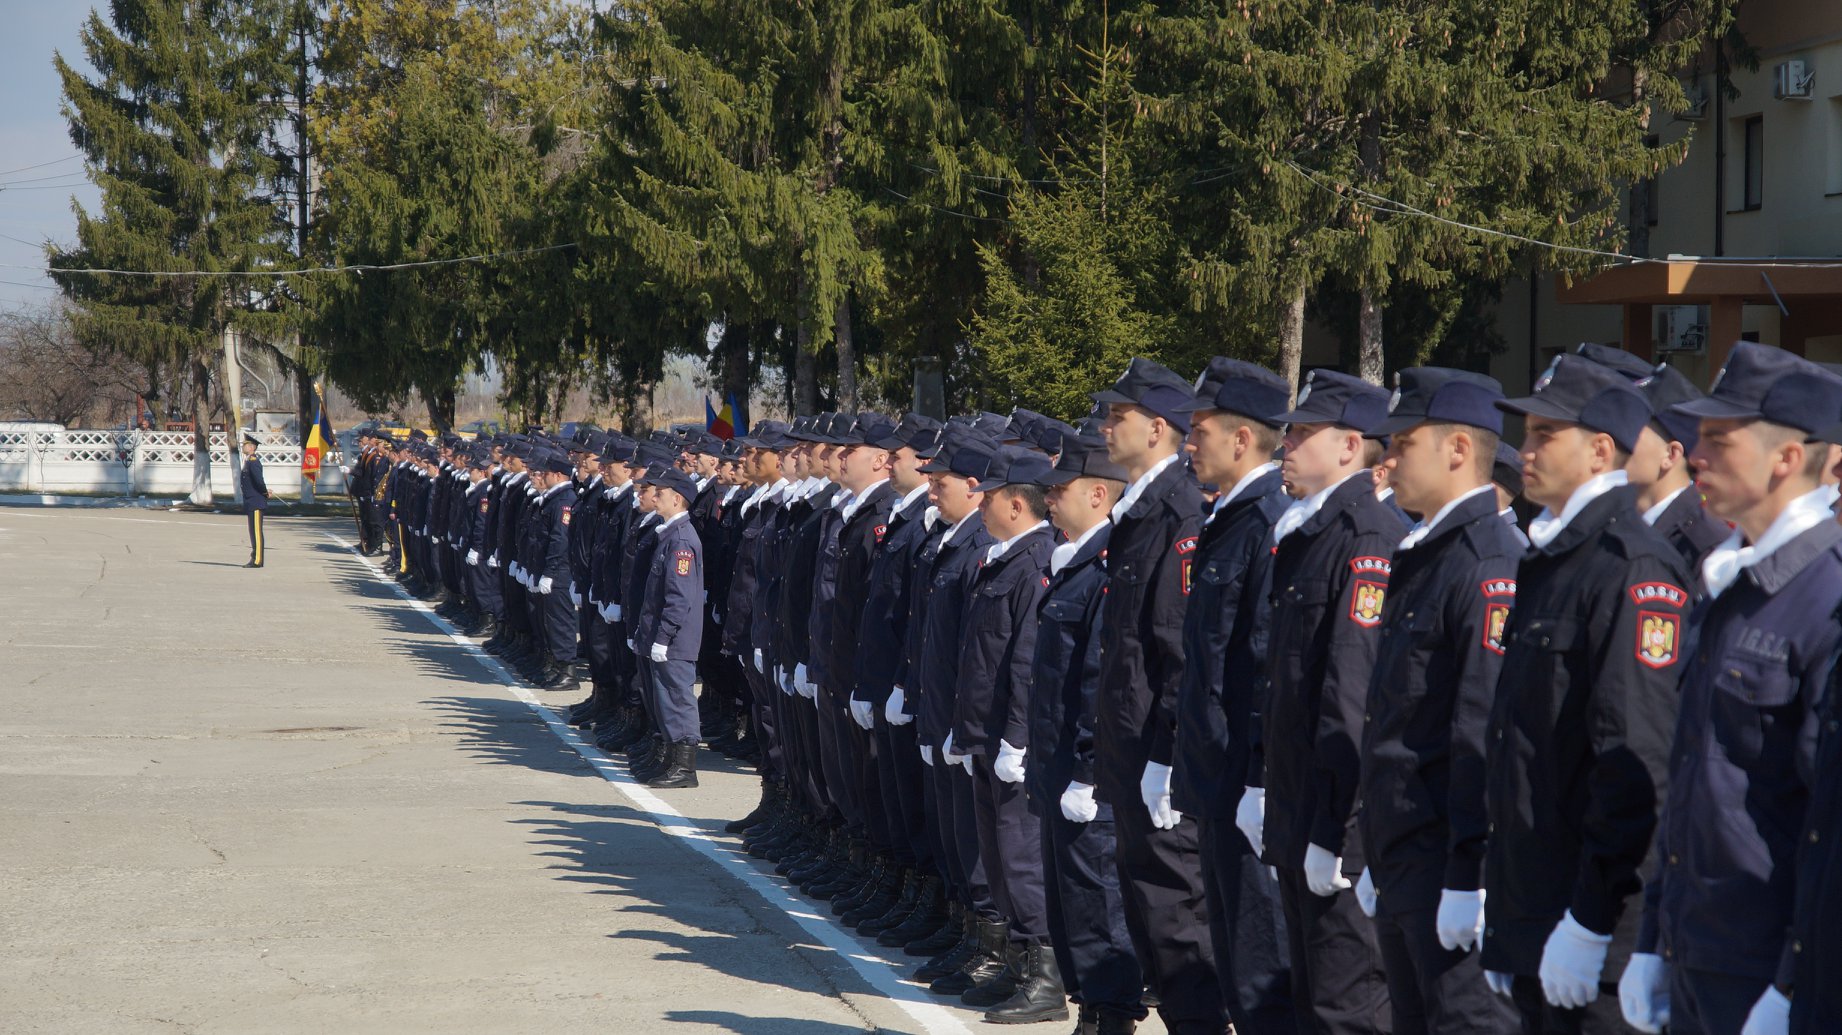 ISU Satu Mare recrutează tineri pentru Şcoala de Subofiţeri de Pompieri şi Protecţie Civilă ,,Pavel Zăgănescu” Boldeşti